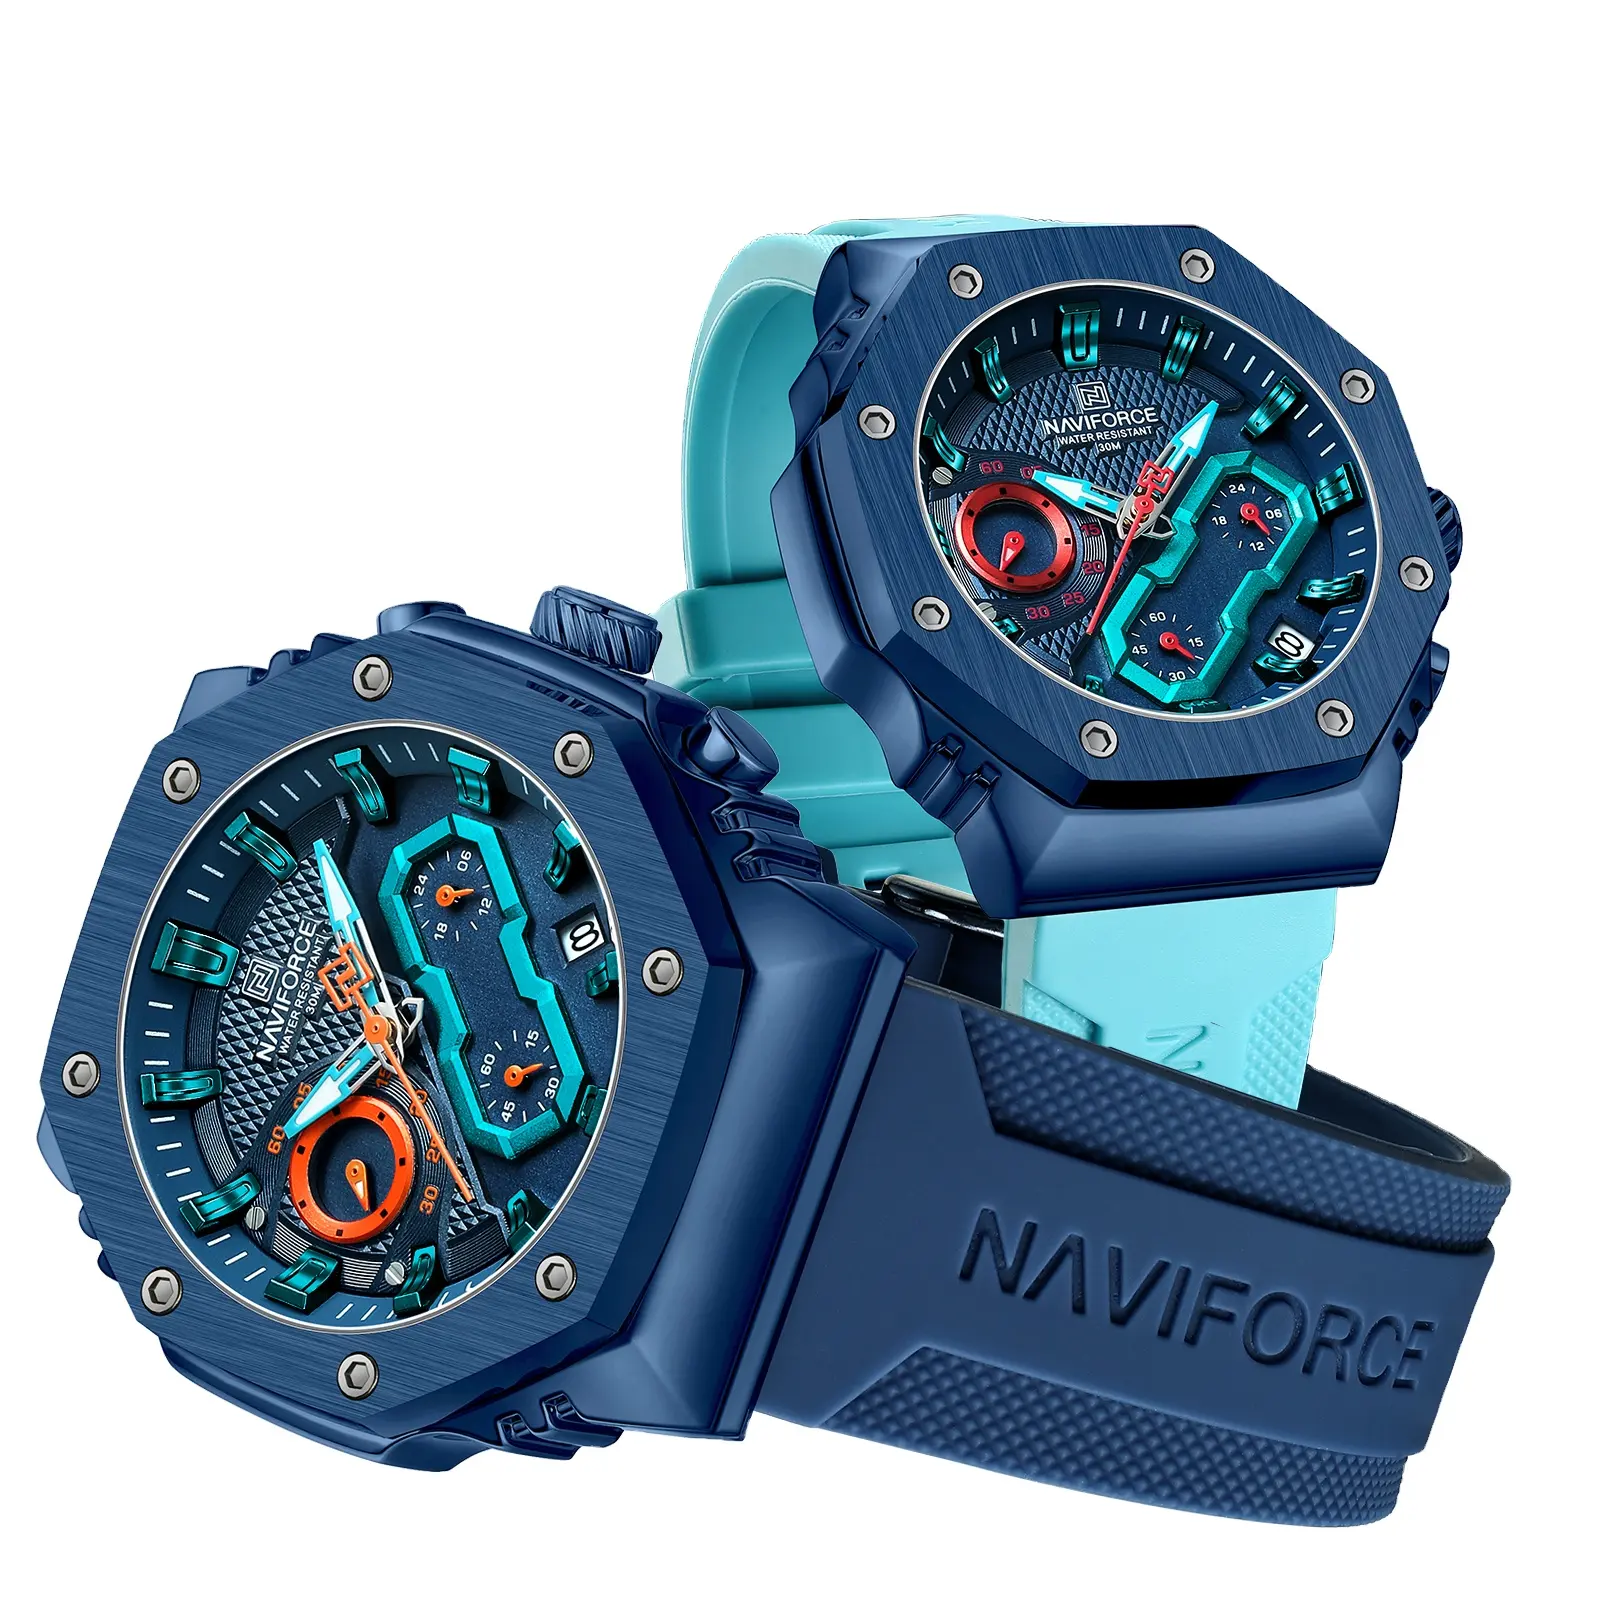 Sıcak satış NAVIFORCE izle 8035 moda erkek saati yüksek kaliteli silikon bant kuvars hareketi tarihi su geçirmez çift saatleri